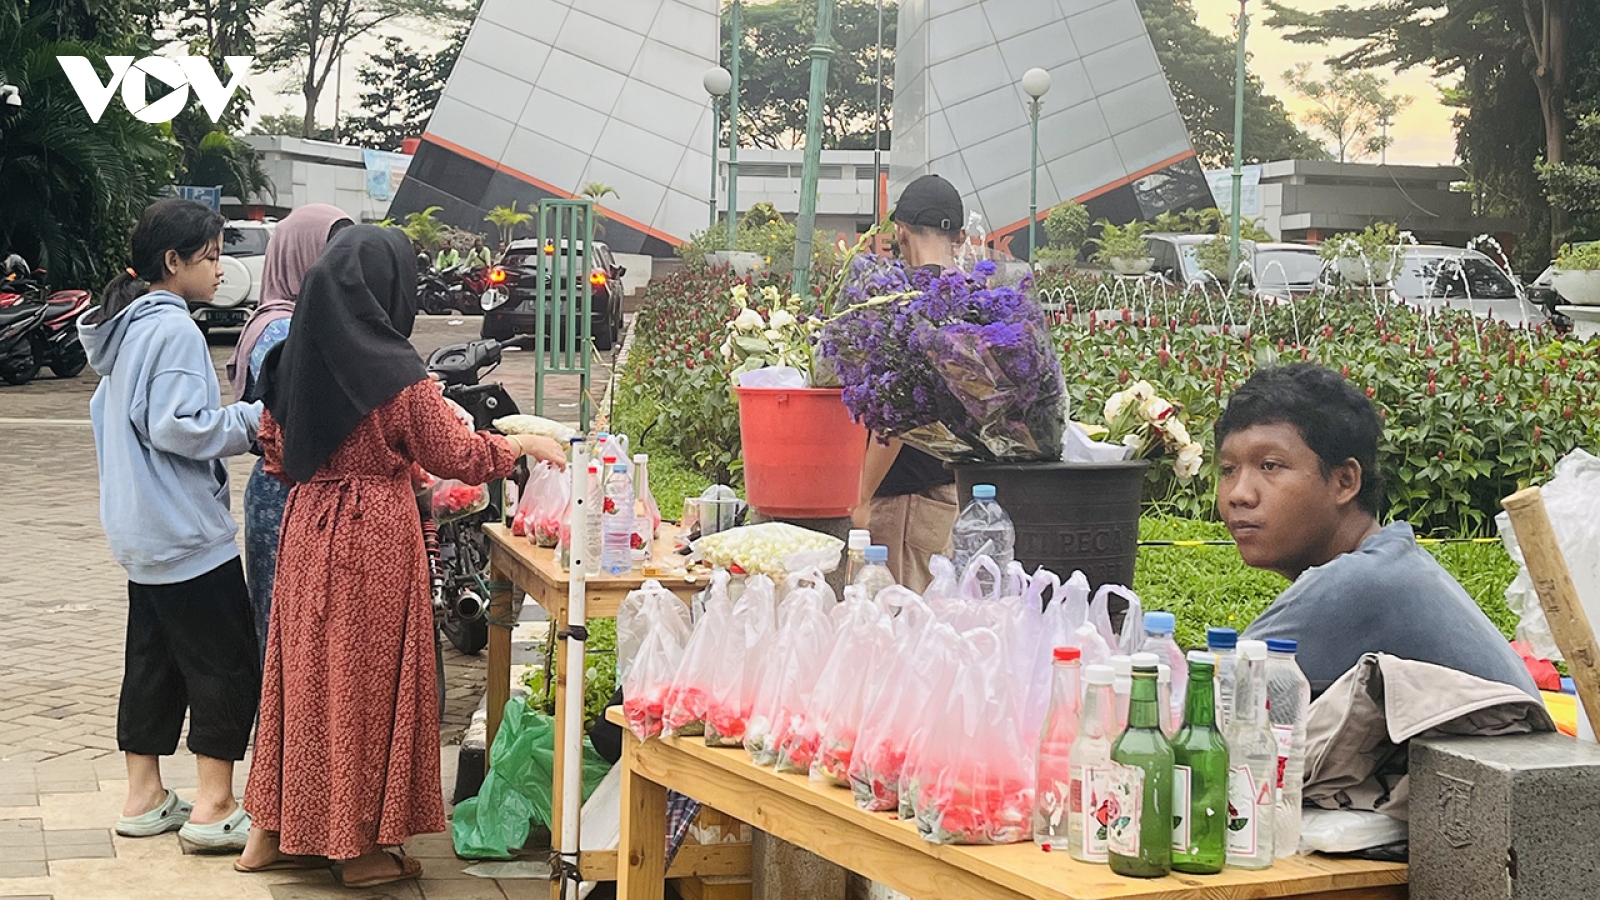 Người dân Indonesia đón tháng lễ Ramadan với nỗi lo giá cả tăng cao